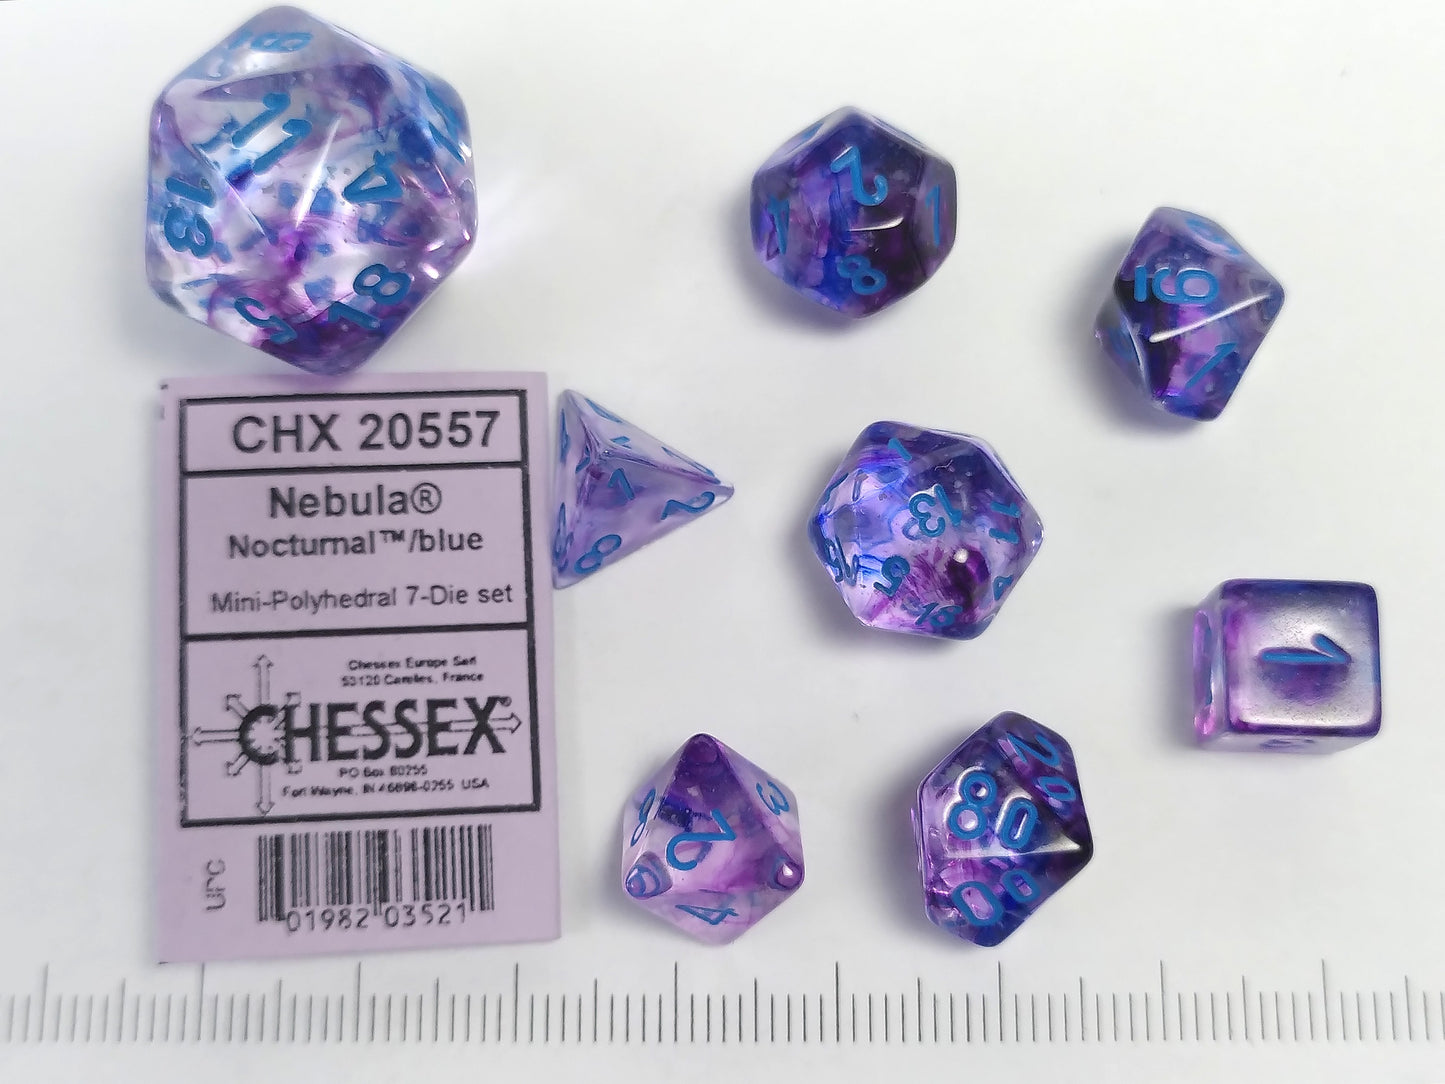 Mini polydice set - Nebula Nocturnal w/blue